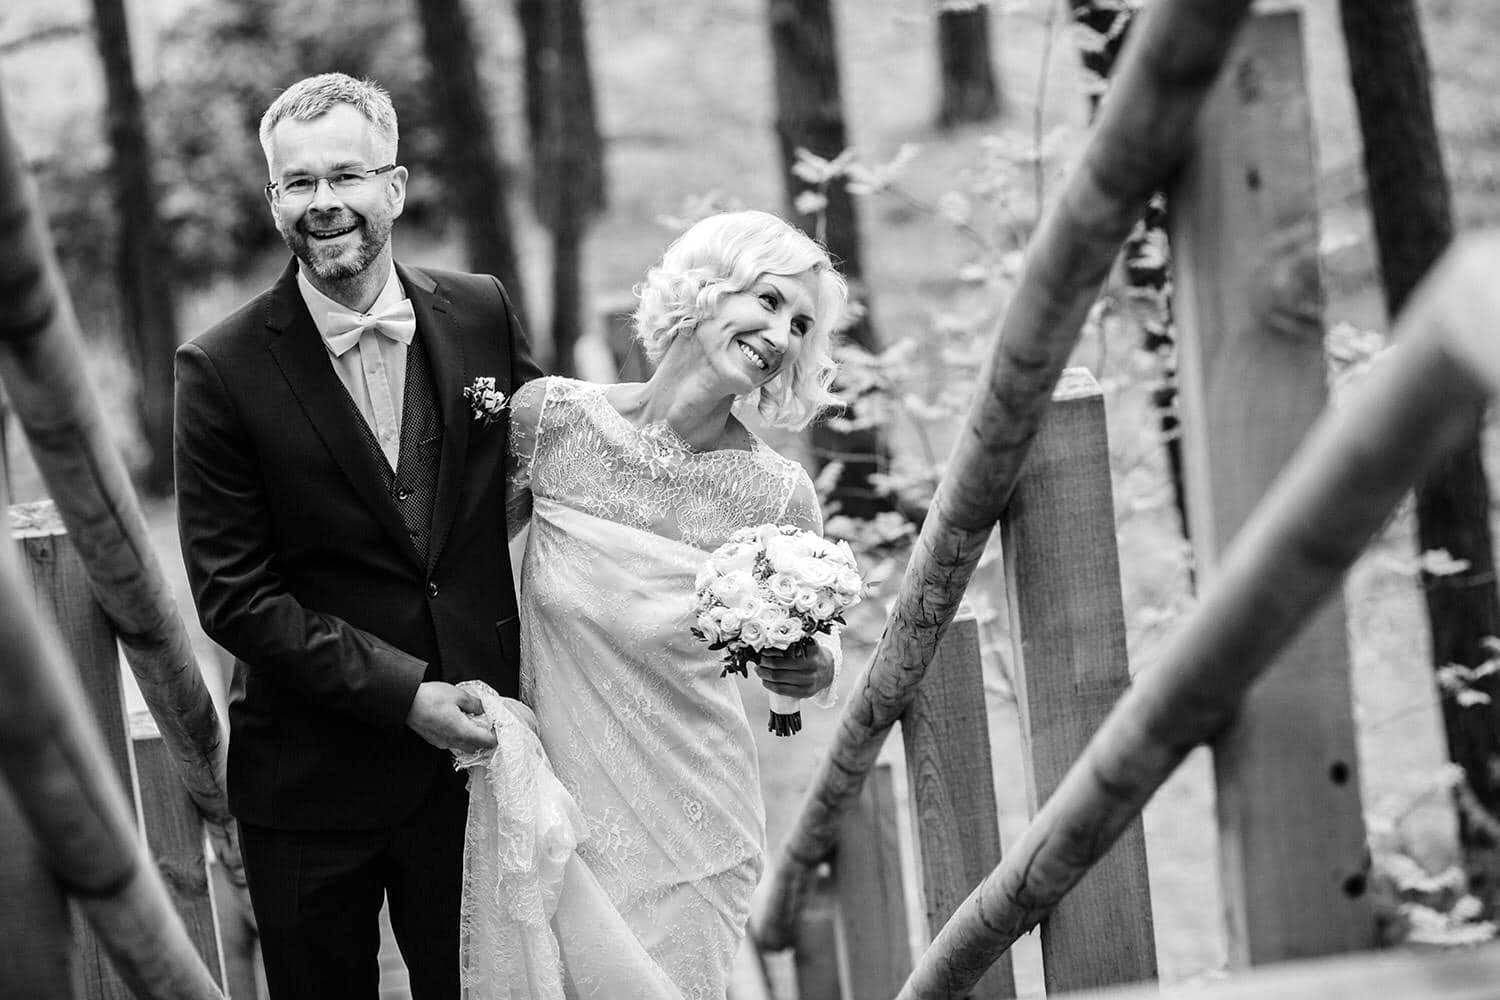 FOTO. VIDEO. Slepus apprecējušies konkurējošo televīziju spīdošākās zvaigznes Ilze Jaunalksne un Gundars Rēders (Bilde 4)